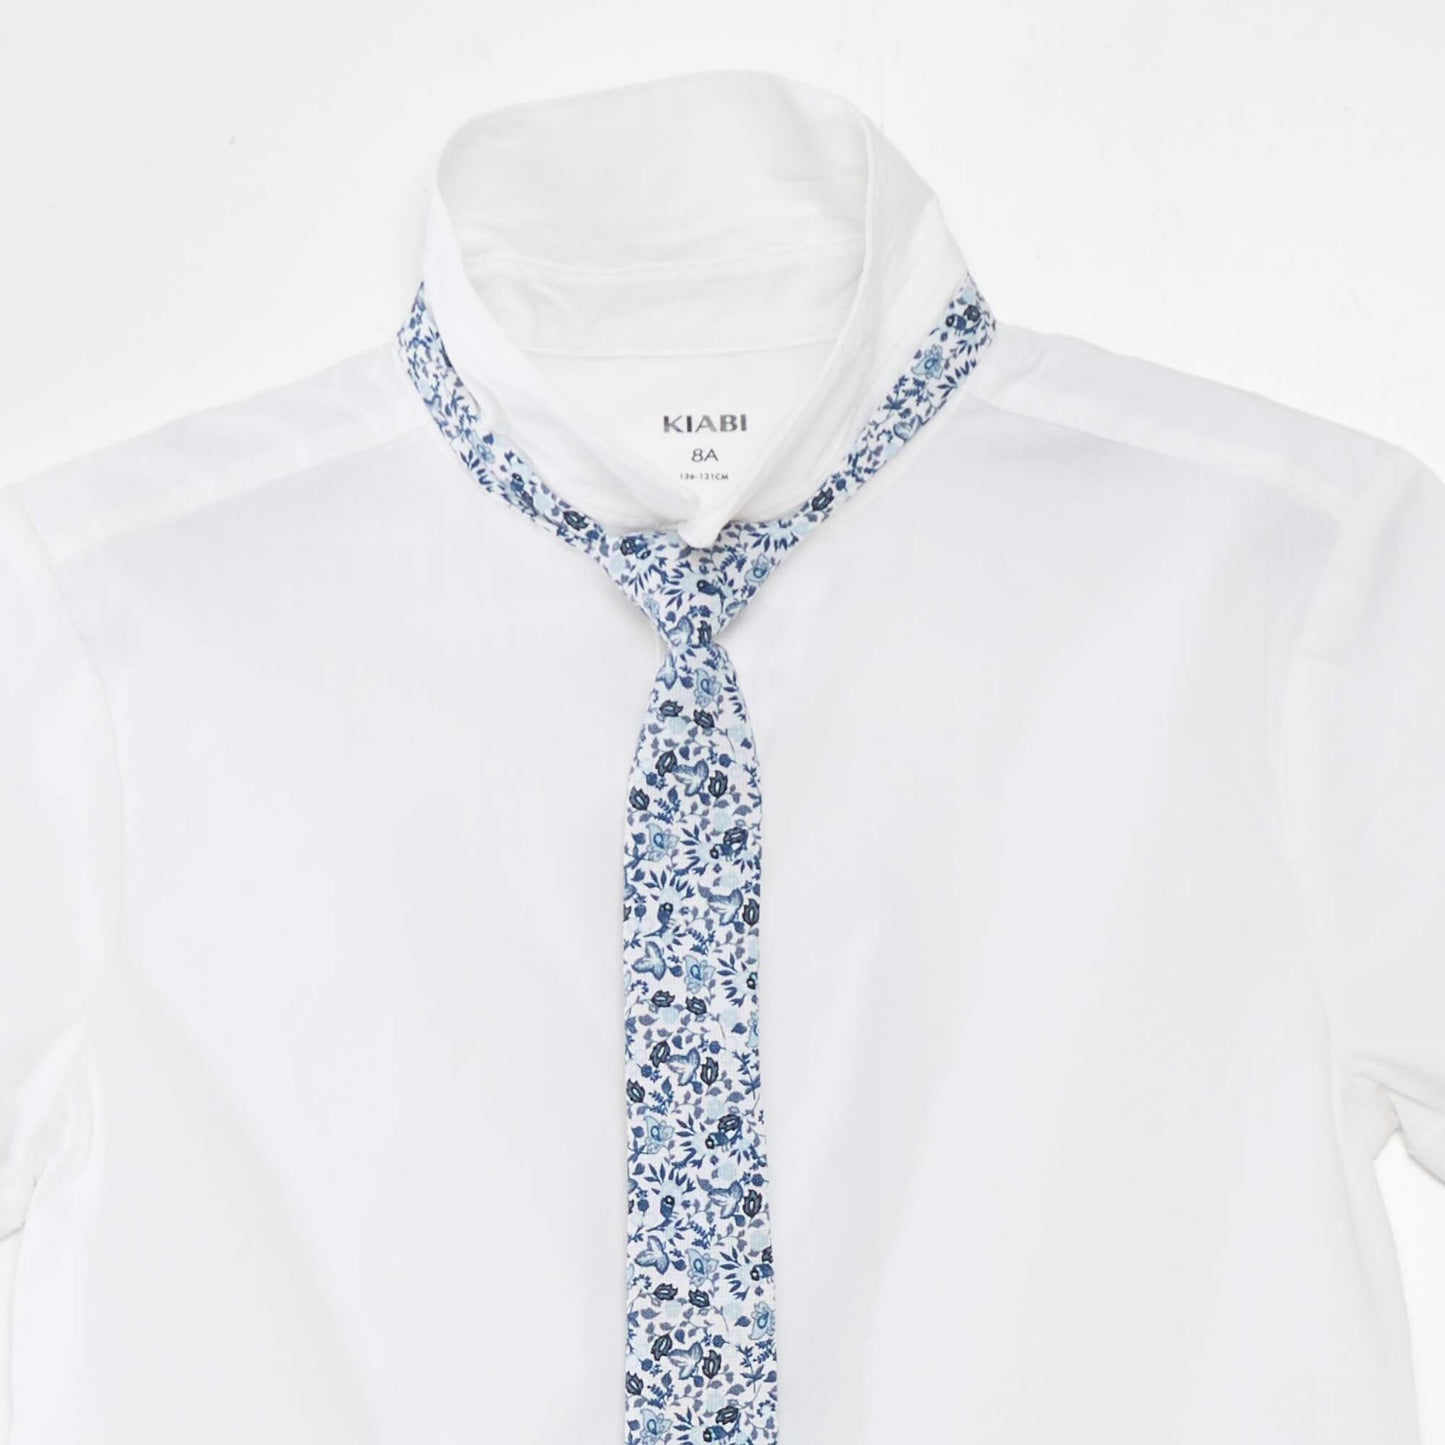 Ensemble chemise en coton + chemise - 2 pièces Blanc